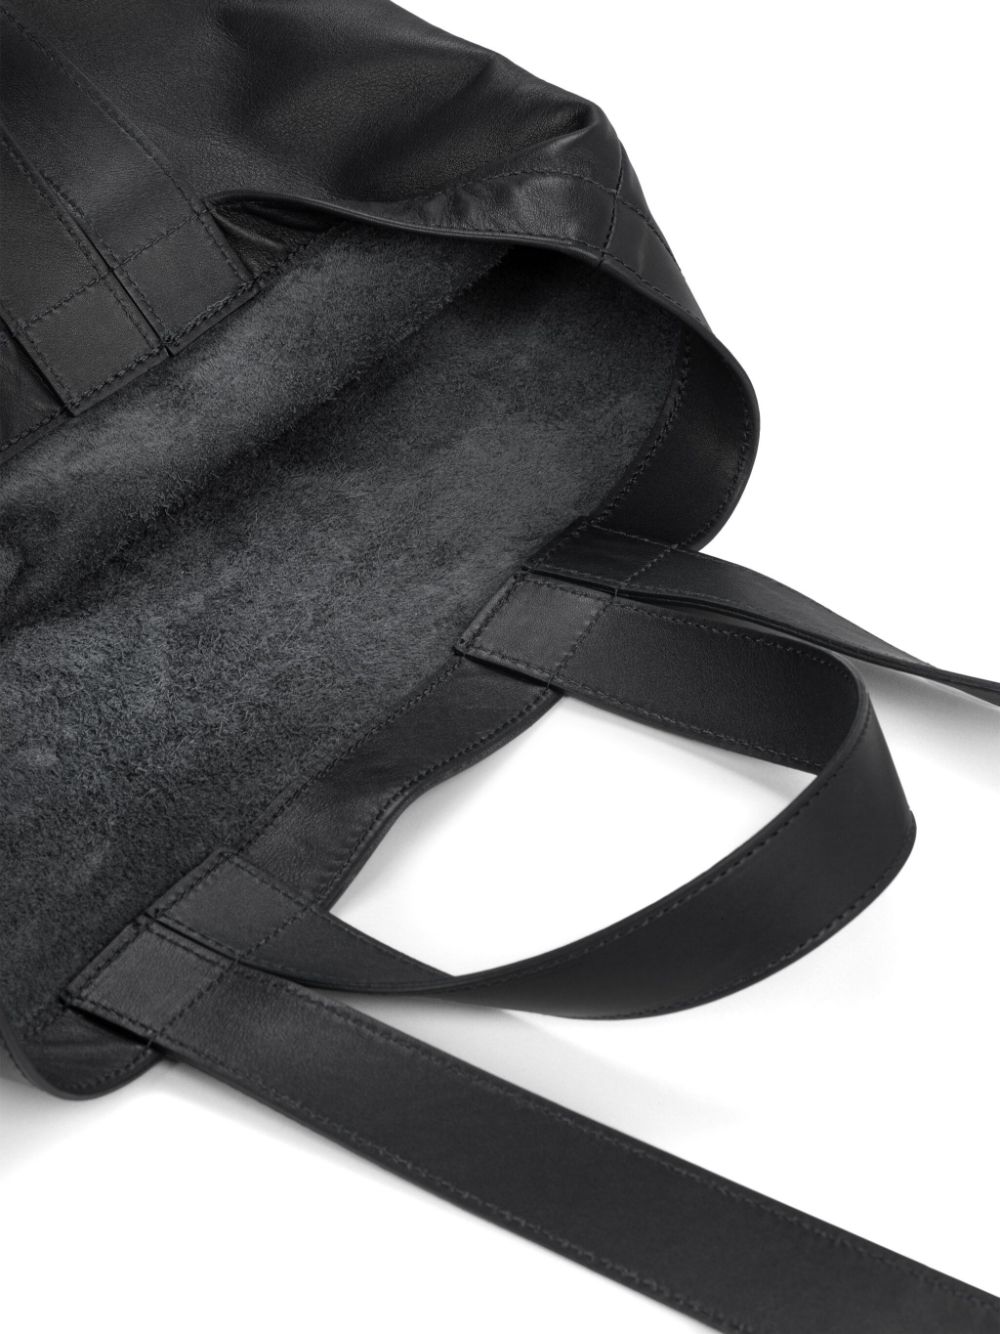 Shop Marsèll Sporta Leather Tote Bag In Black